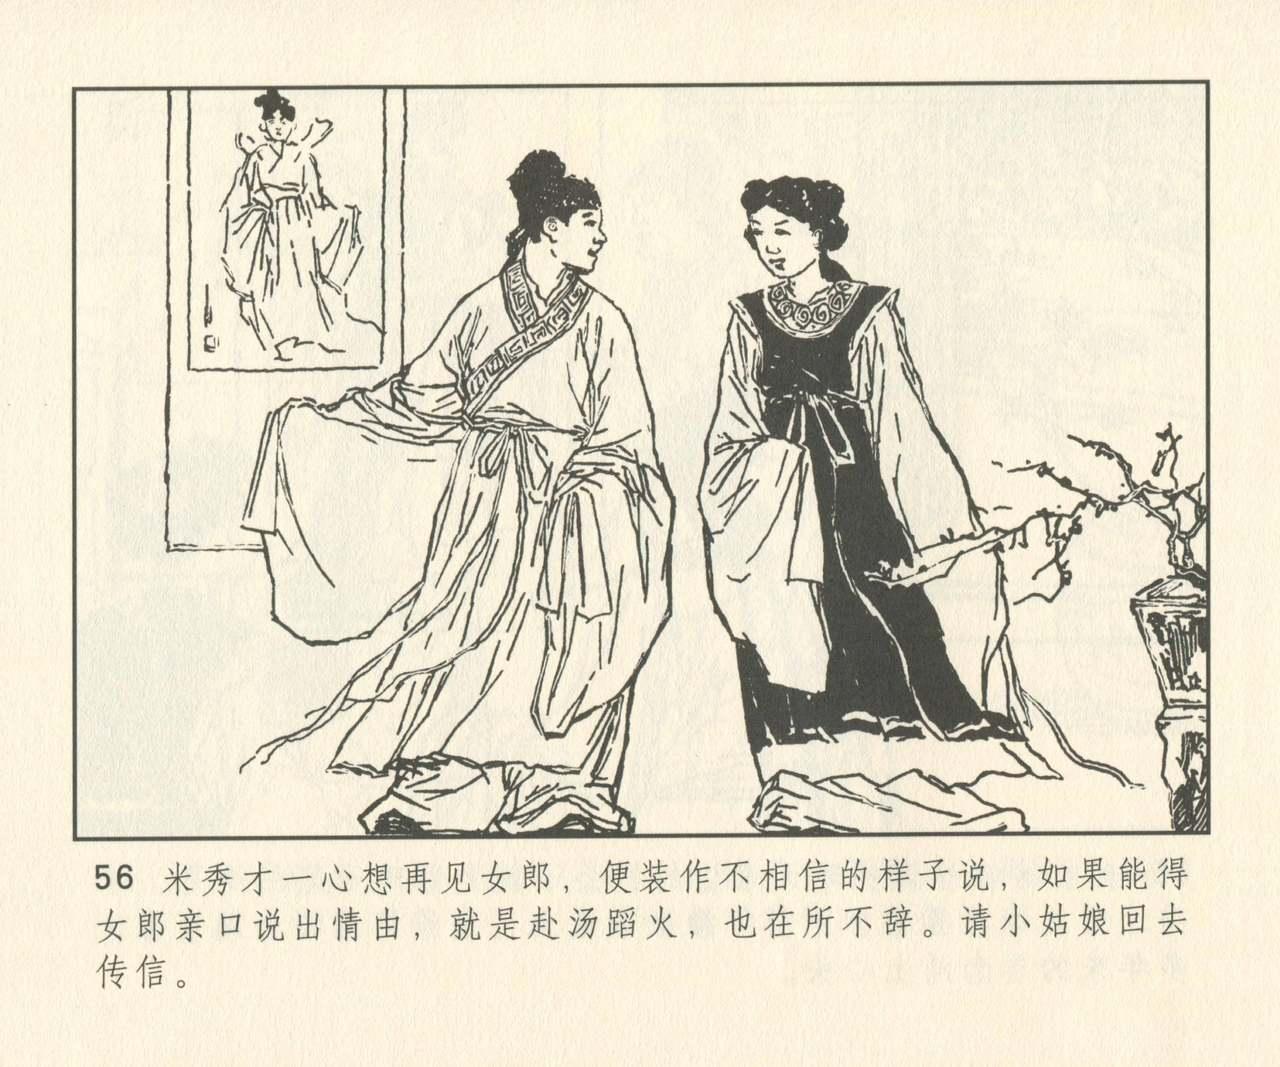 聊斋志异 张玮等绘 天津人民美术出版社 卷二十一 ~ 三十 184